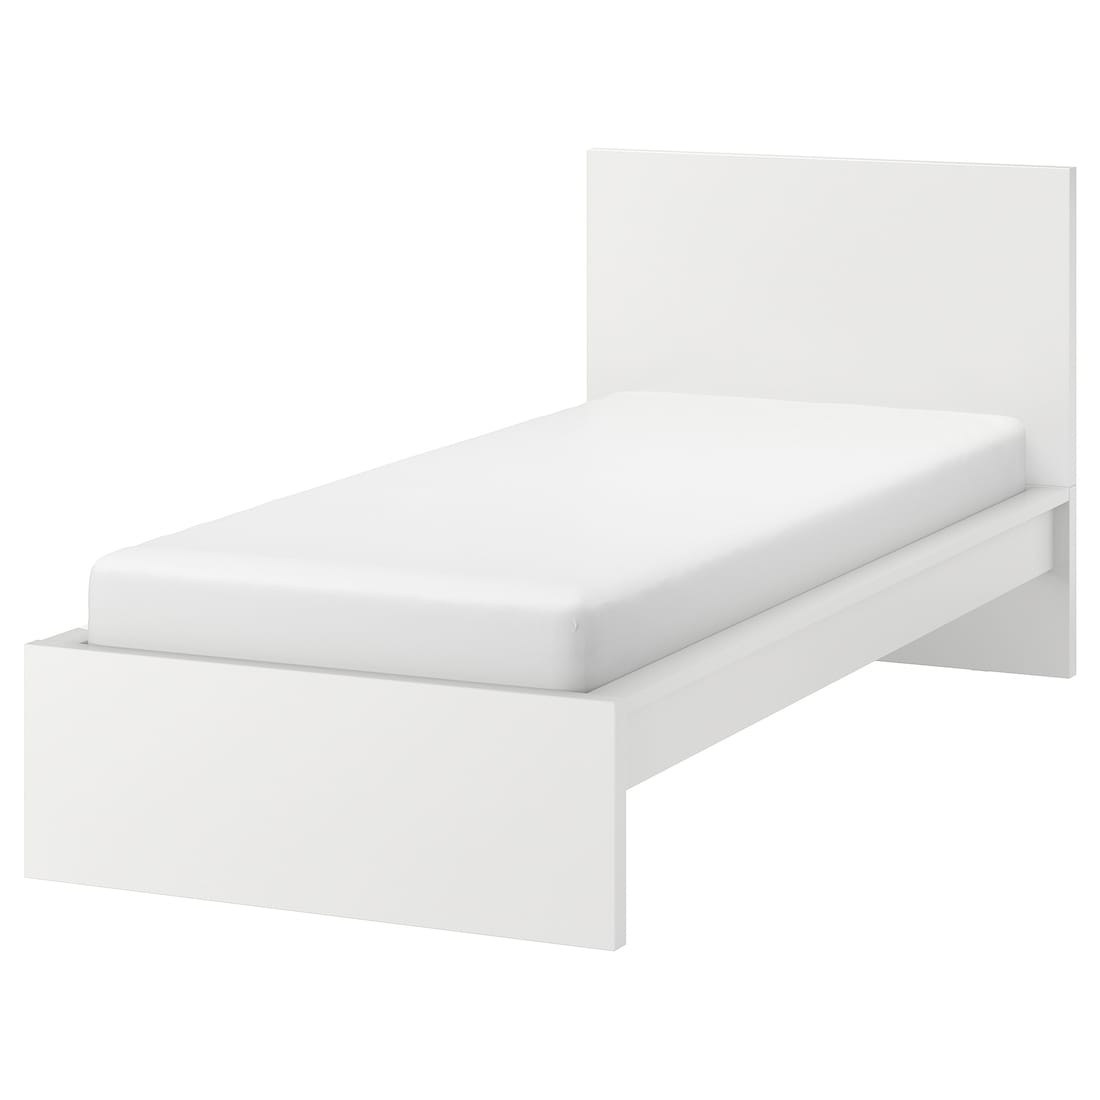 IKEA MALM МАЛЬМ Ліжко односпальне, високе, білий / Ліндбаден, 90x200 см 19494978 194.949.78